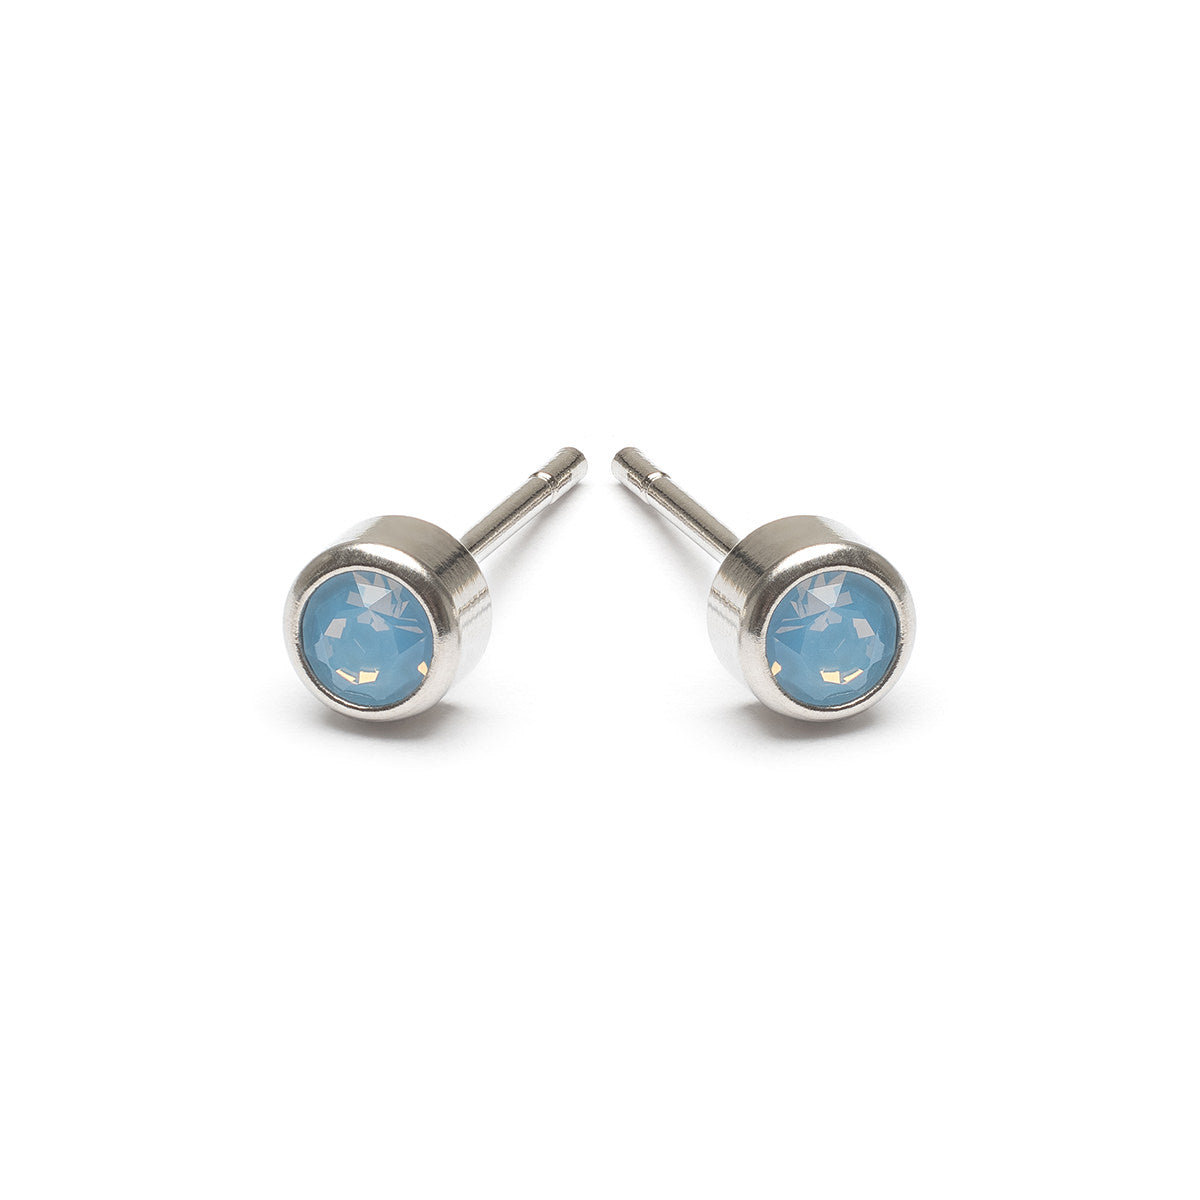 Blue Crystal Stud Earrings - Simply Whispers